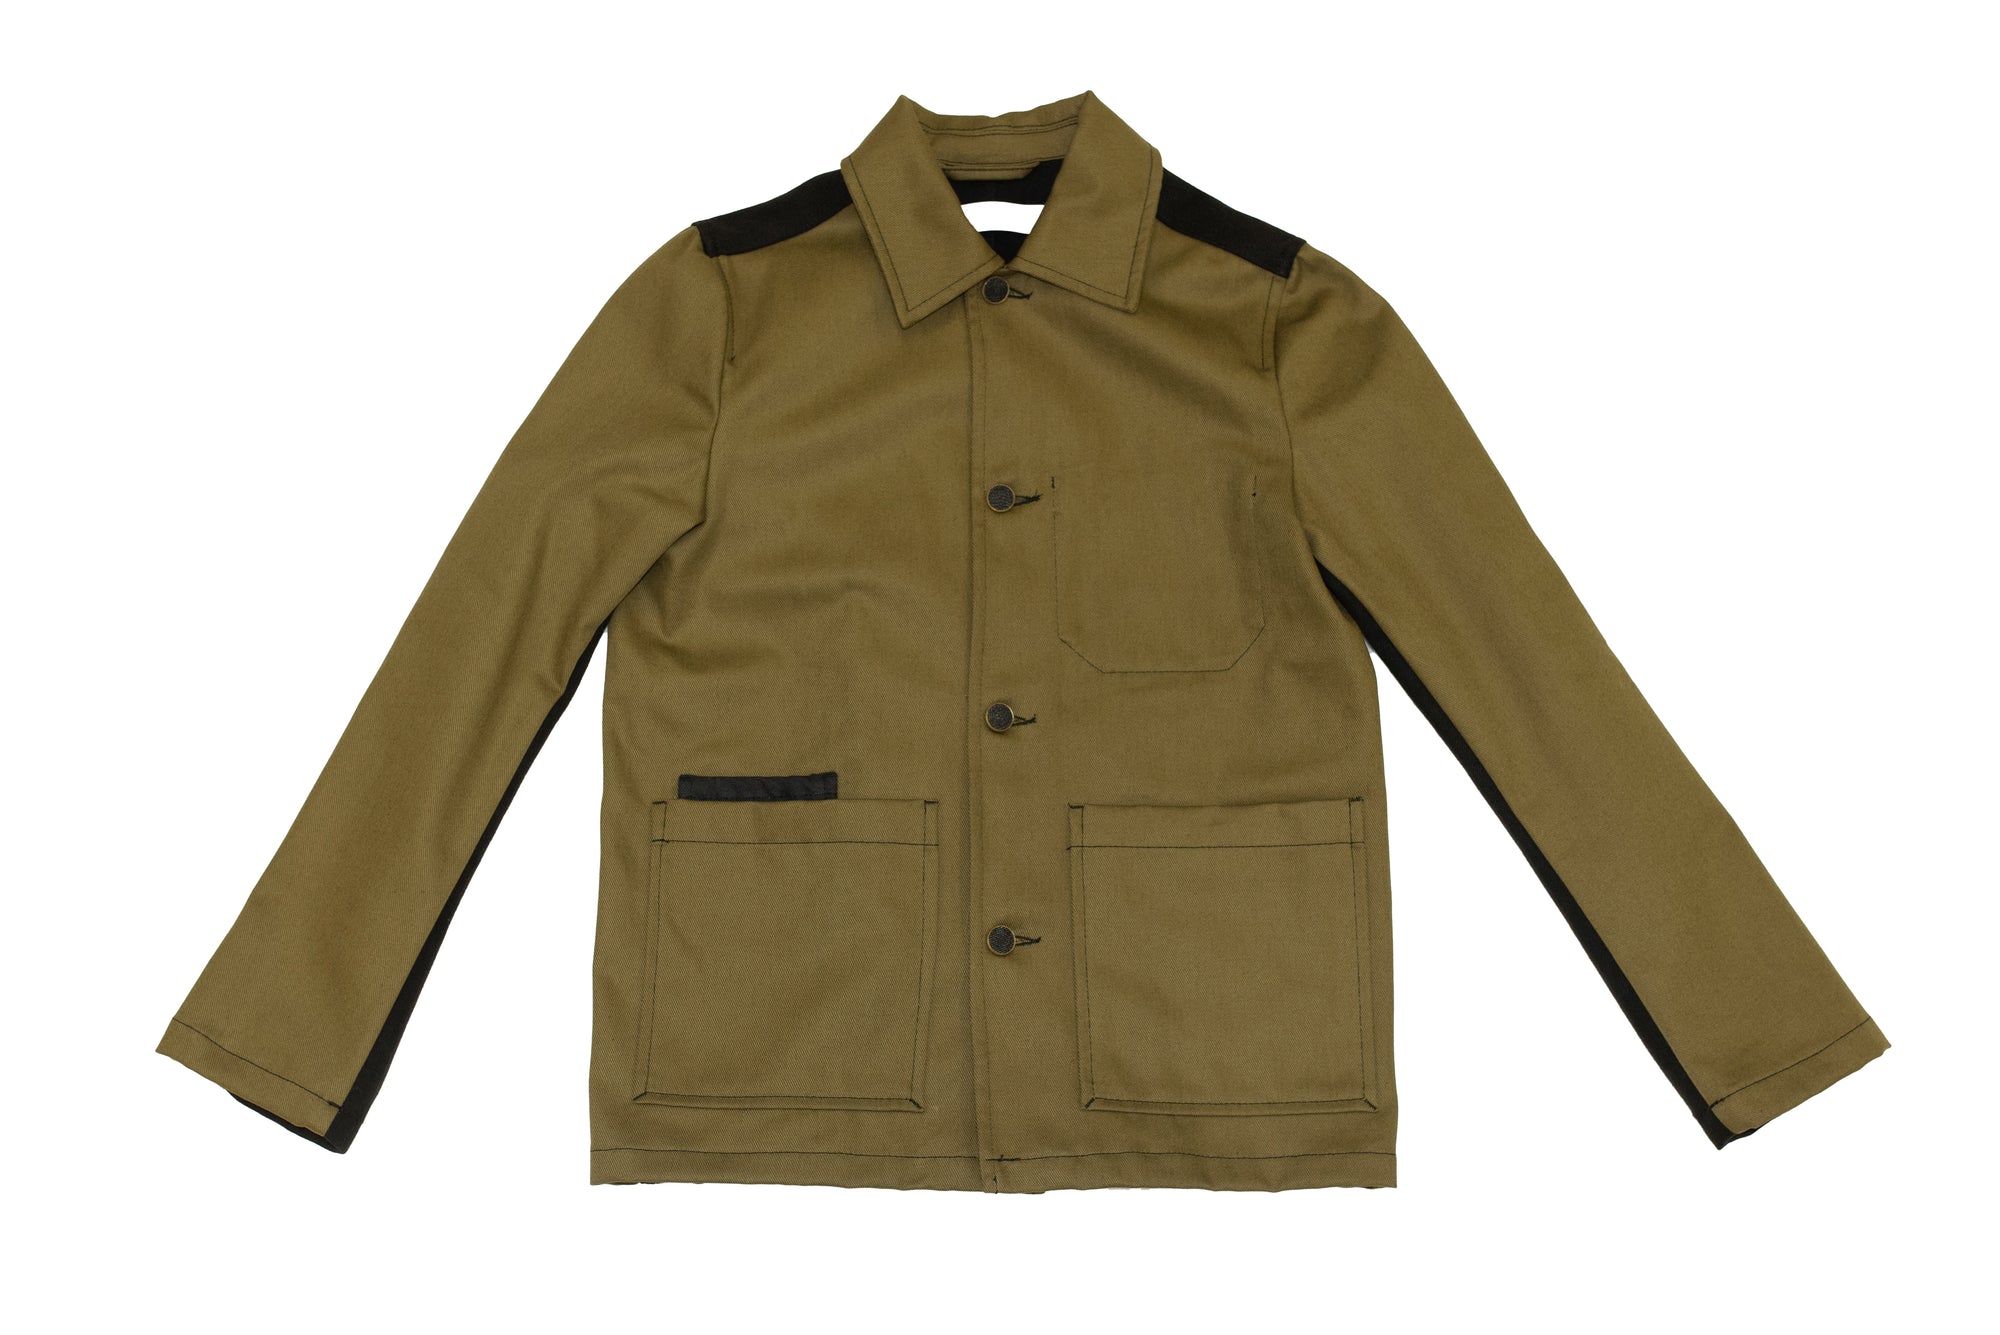 Denali shirt jacket unisex - upcycled garment